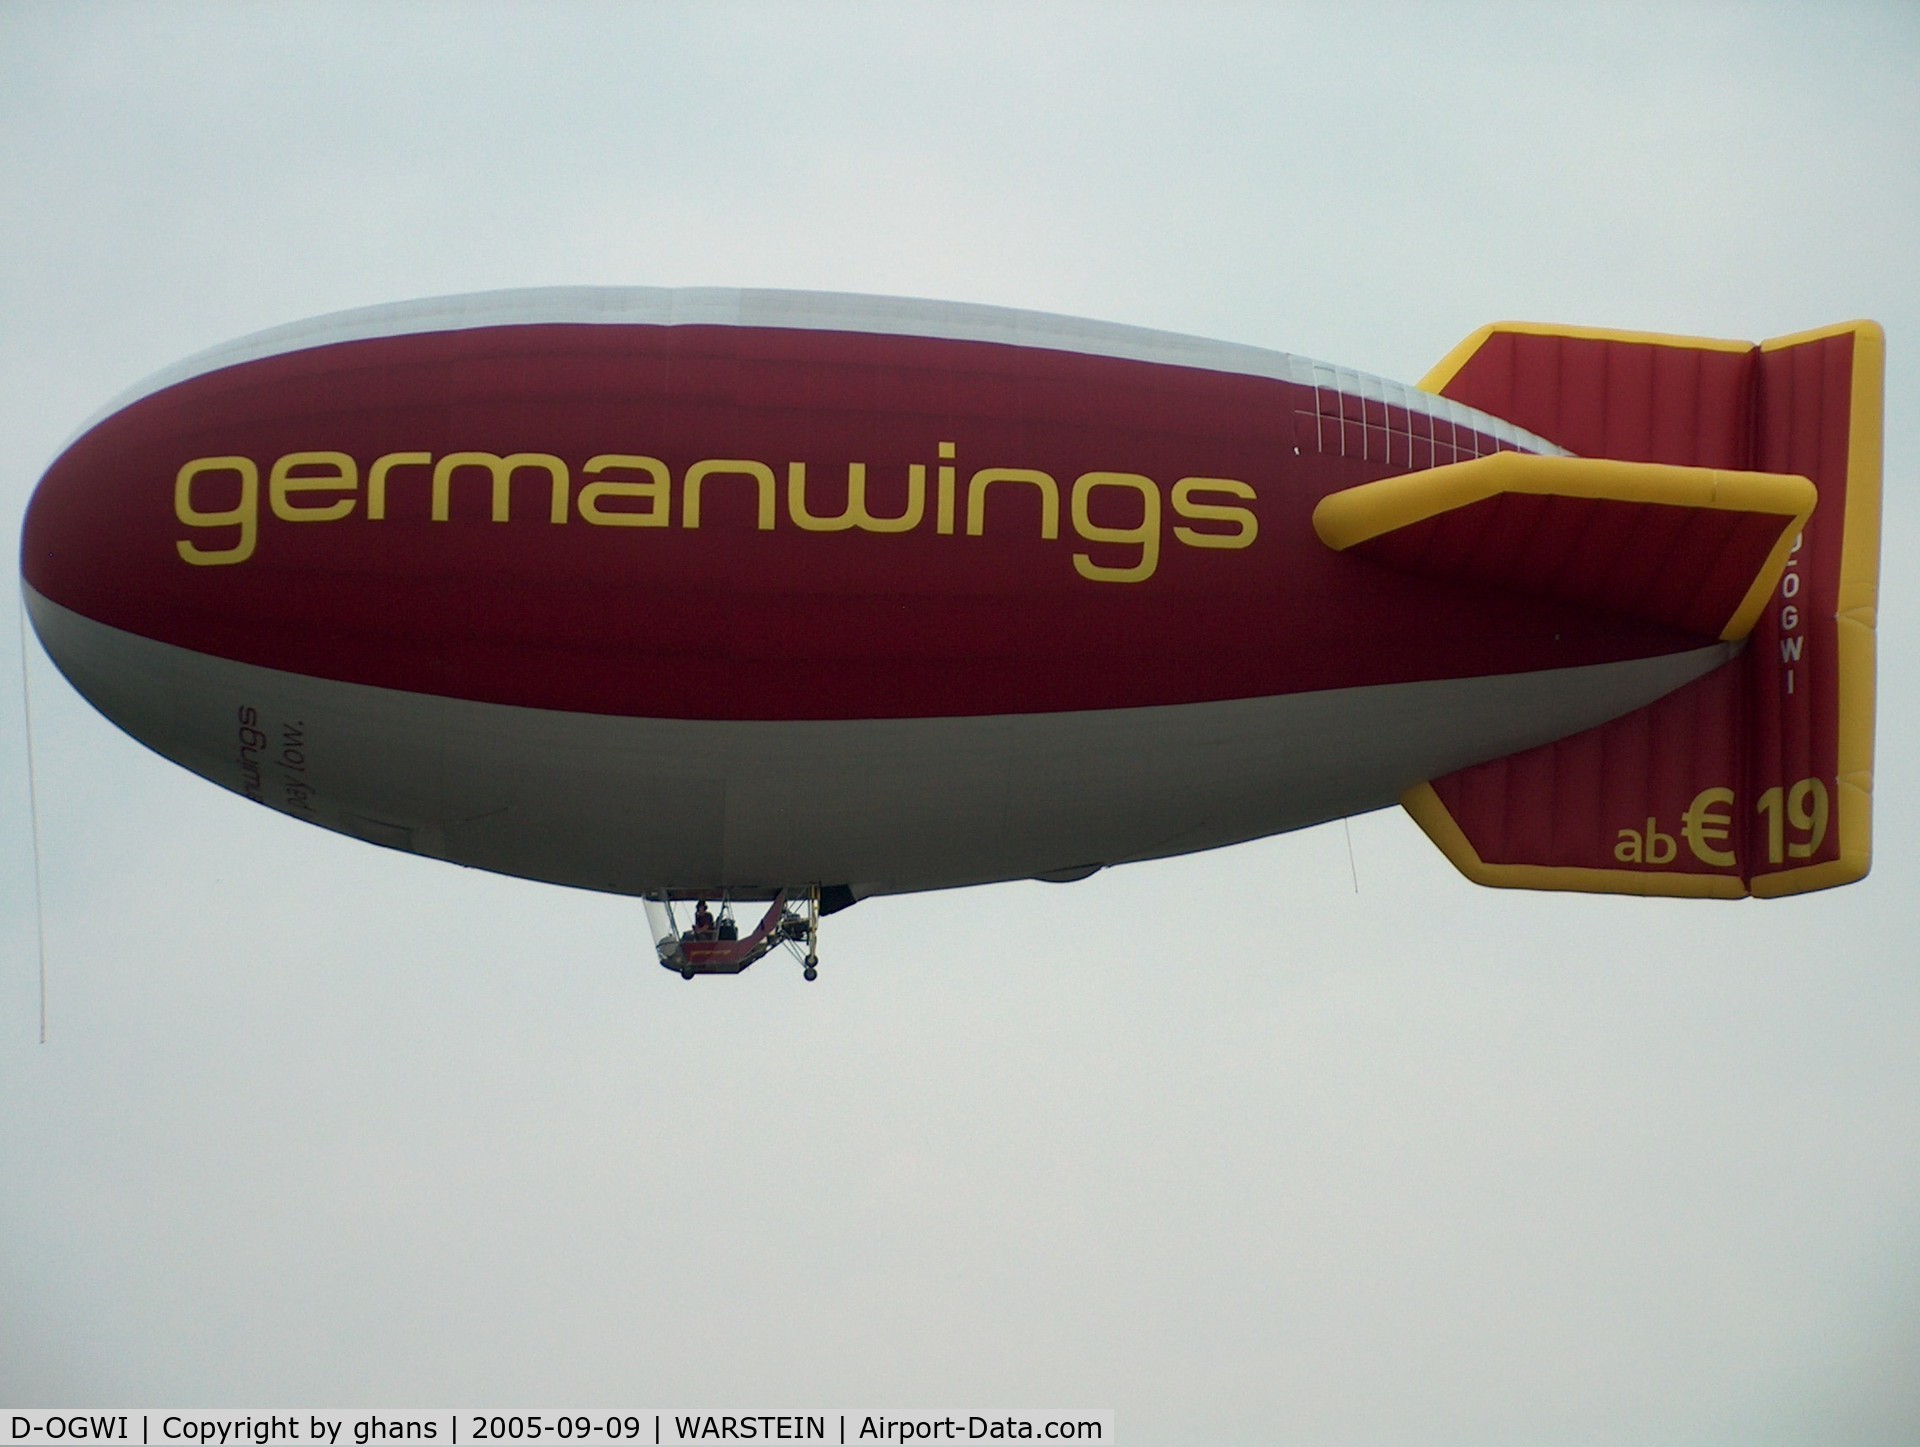 D-OGWI, 2004 Gefa-Flug AS.105 C/N 34, GermanWings